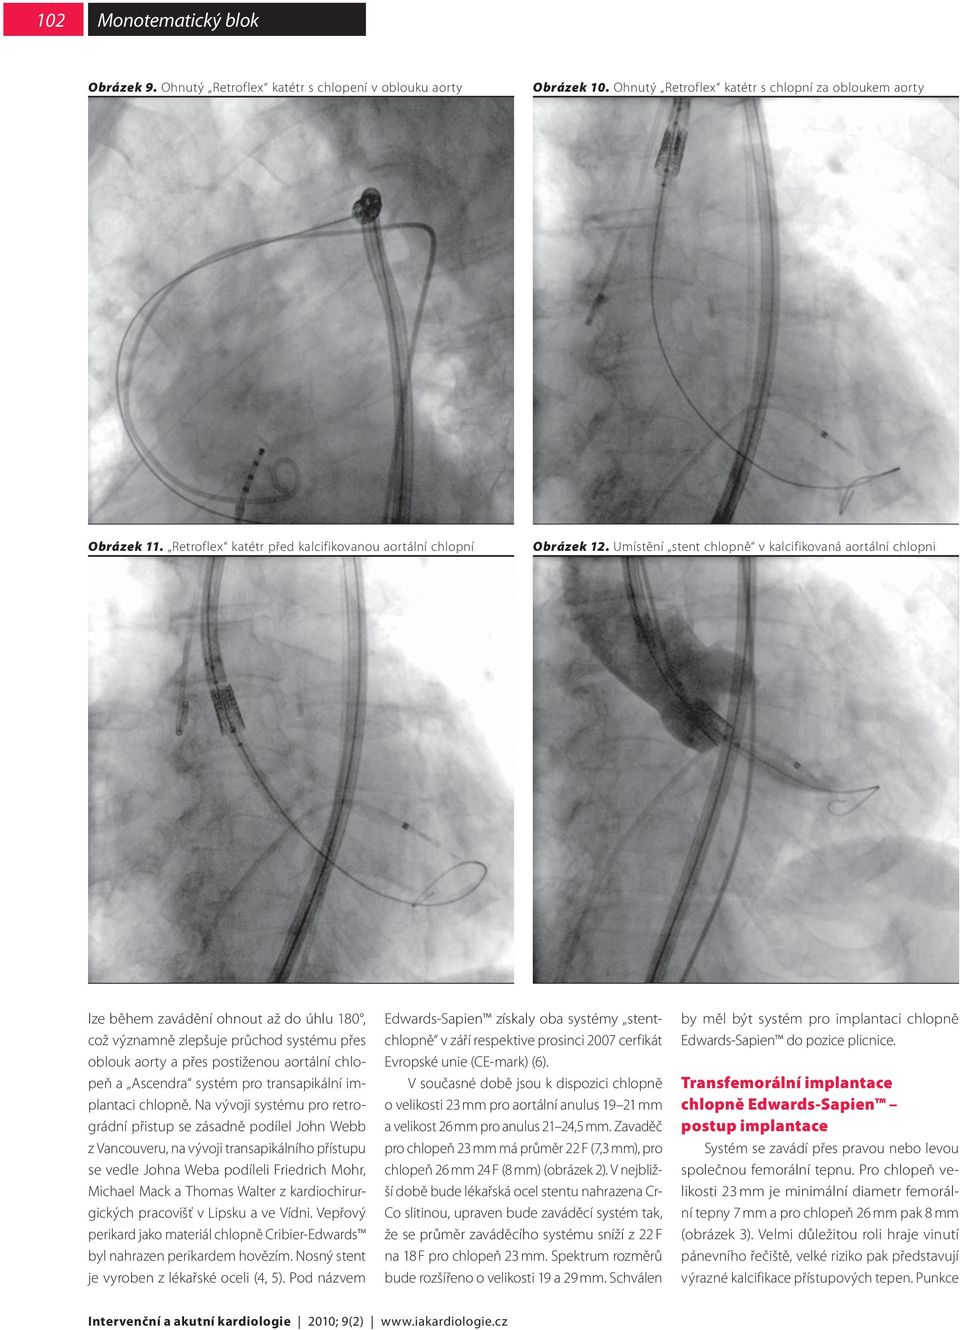 Umístění stent chlopně v kalcifikovaná aortální chlopni lze během zavádění ohnout až do úhlu 180, což významně zlepšuje průchod systému přes oblouk aorty a přes postiženou aortální chlopeň a Ascendra